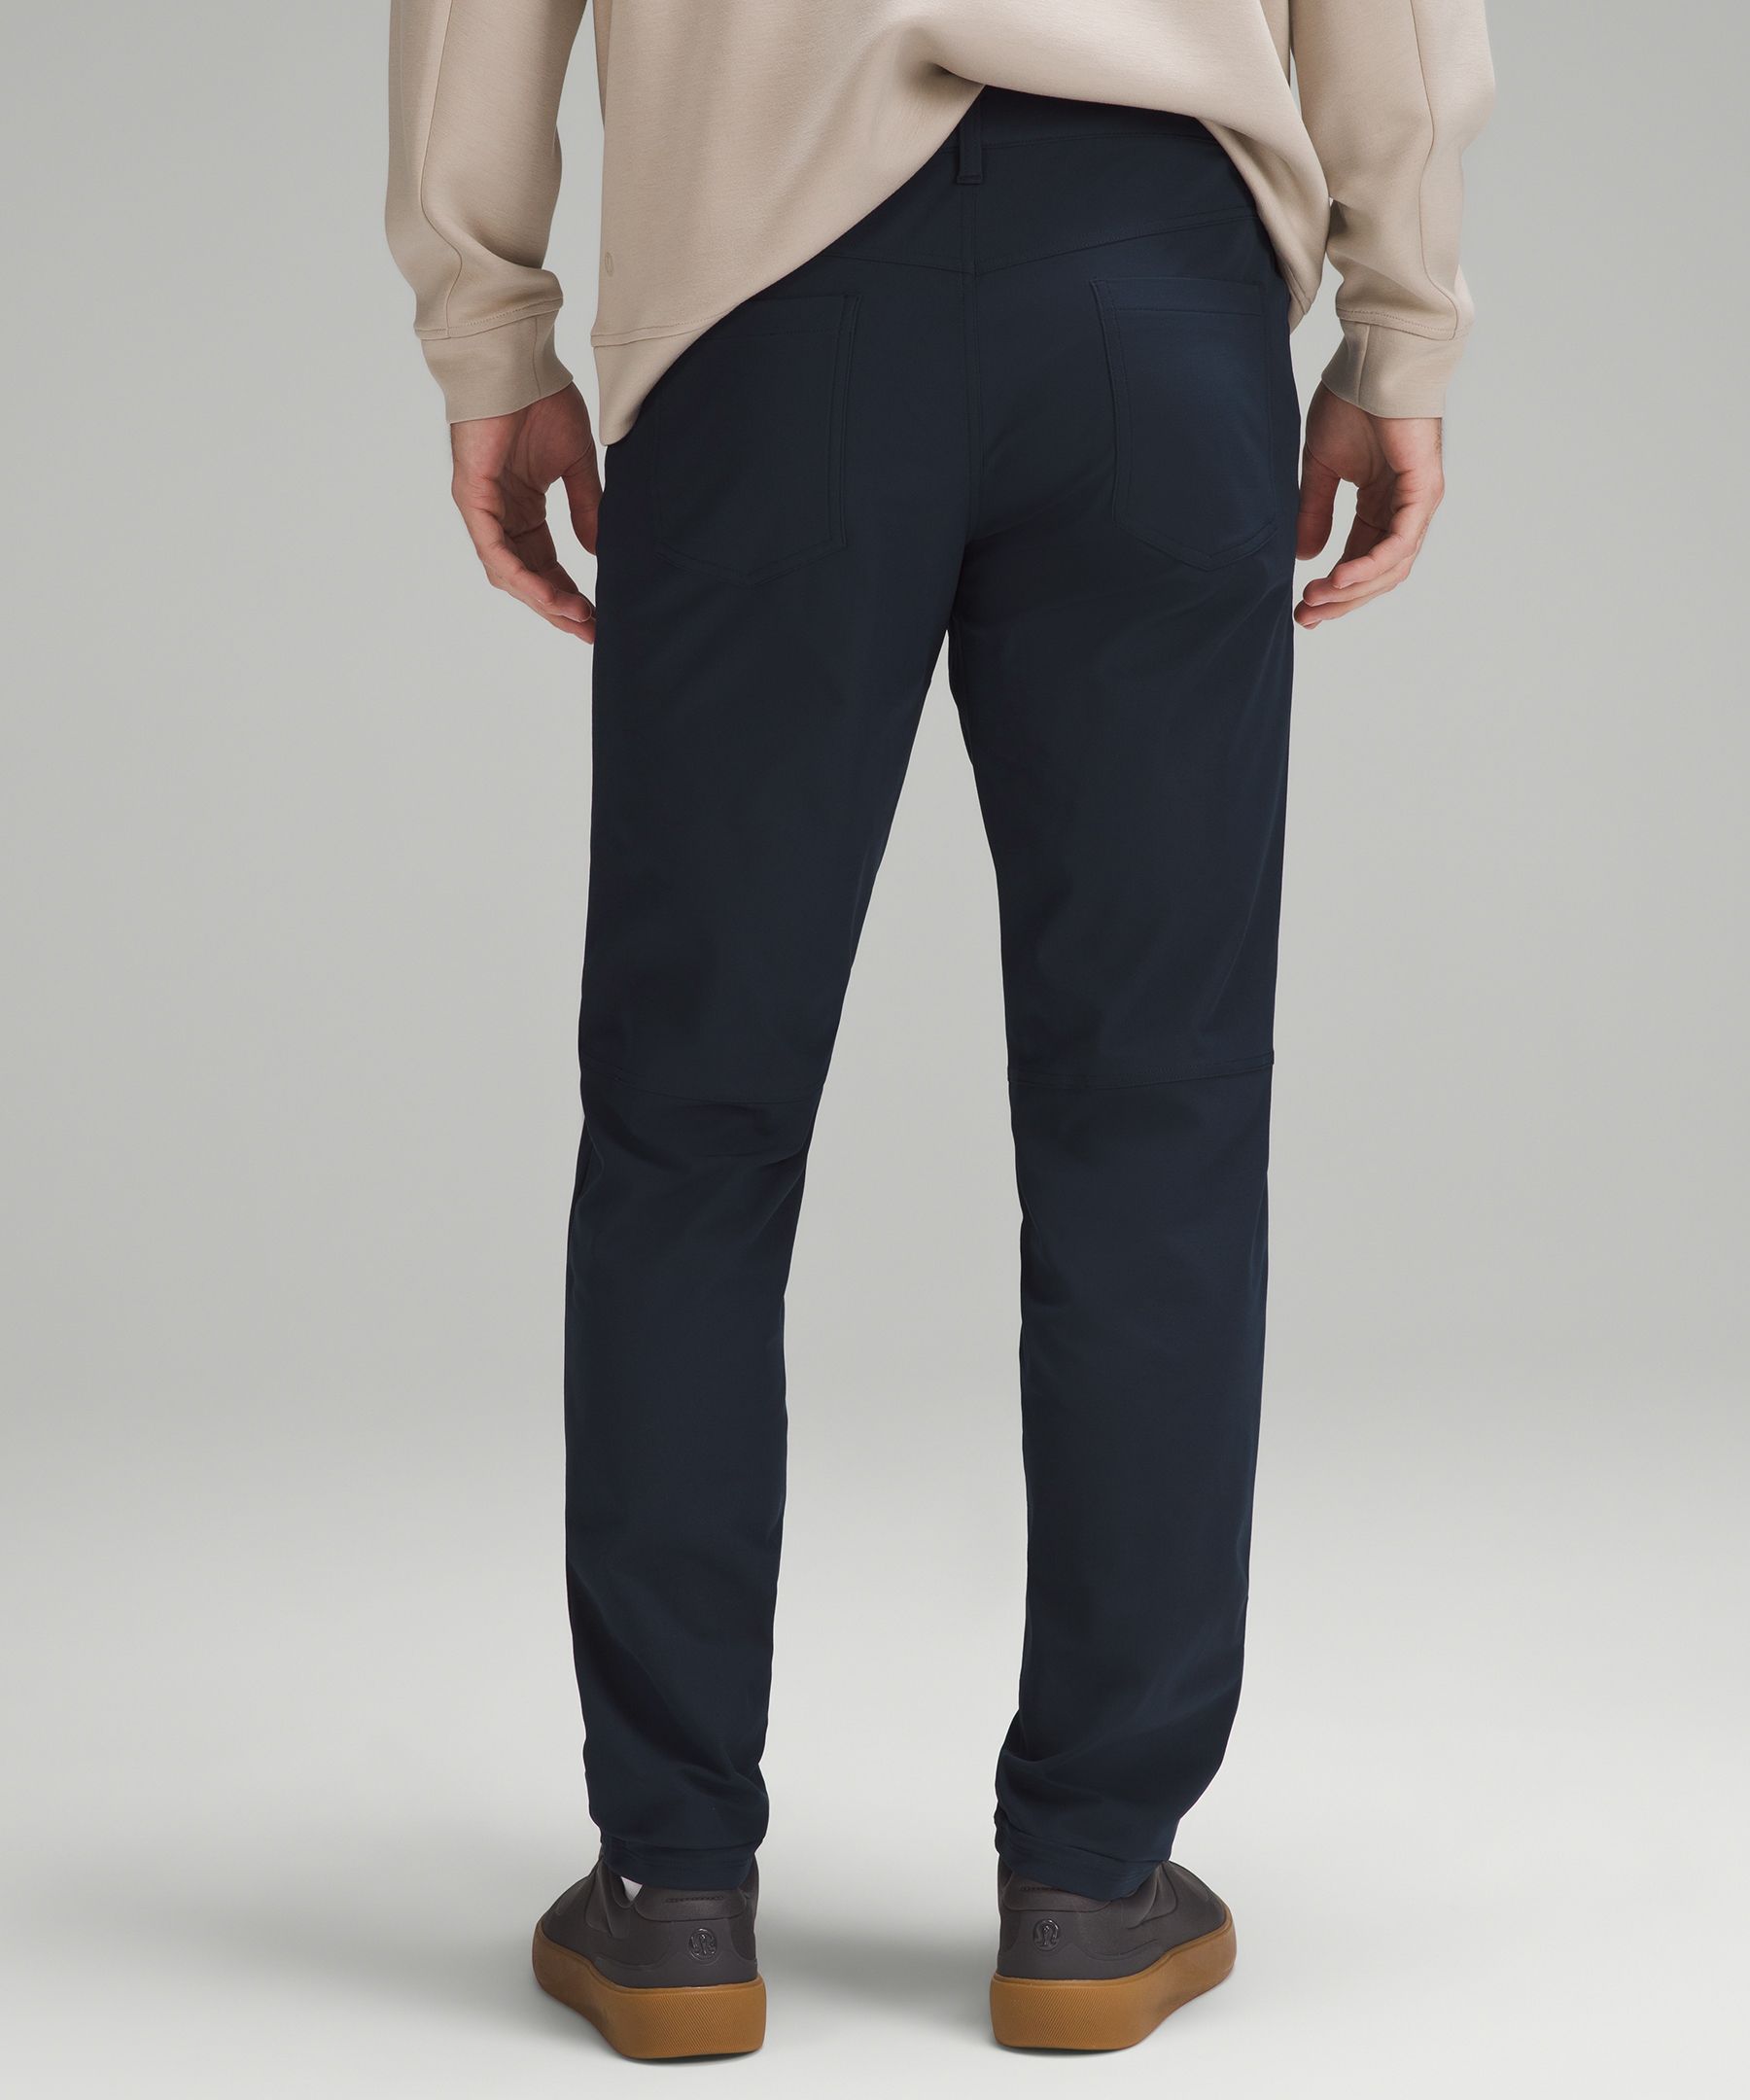 ABC Slim-Fit 5 Pocket Pant 37L *Warpstreme, Men's Trousers